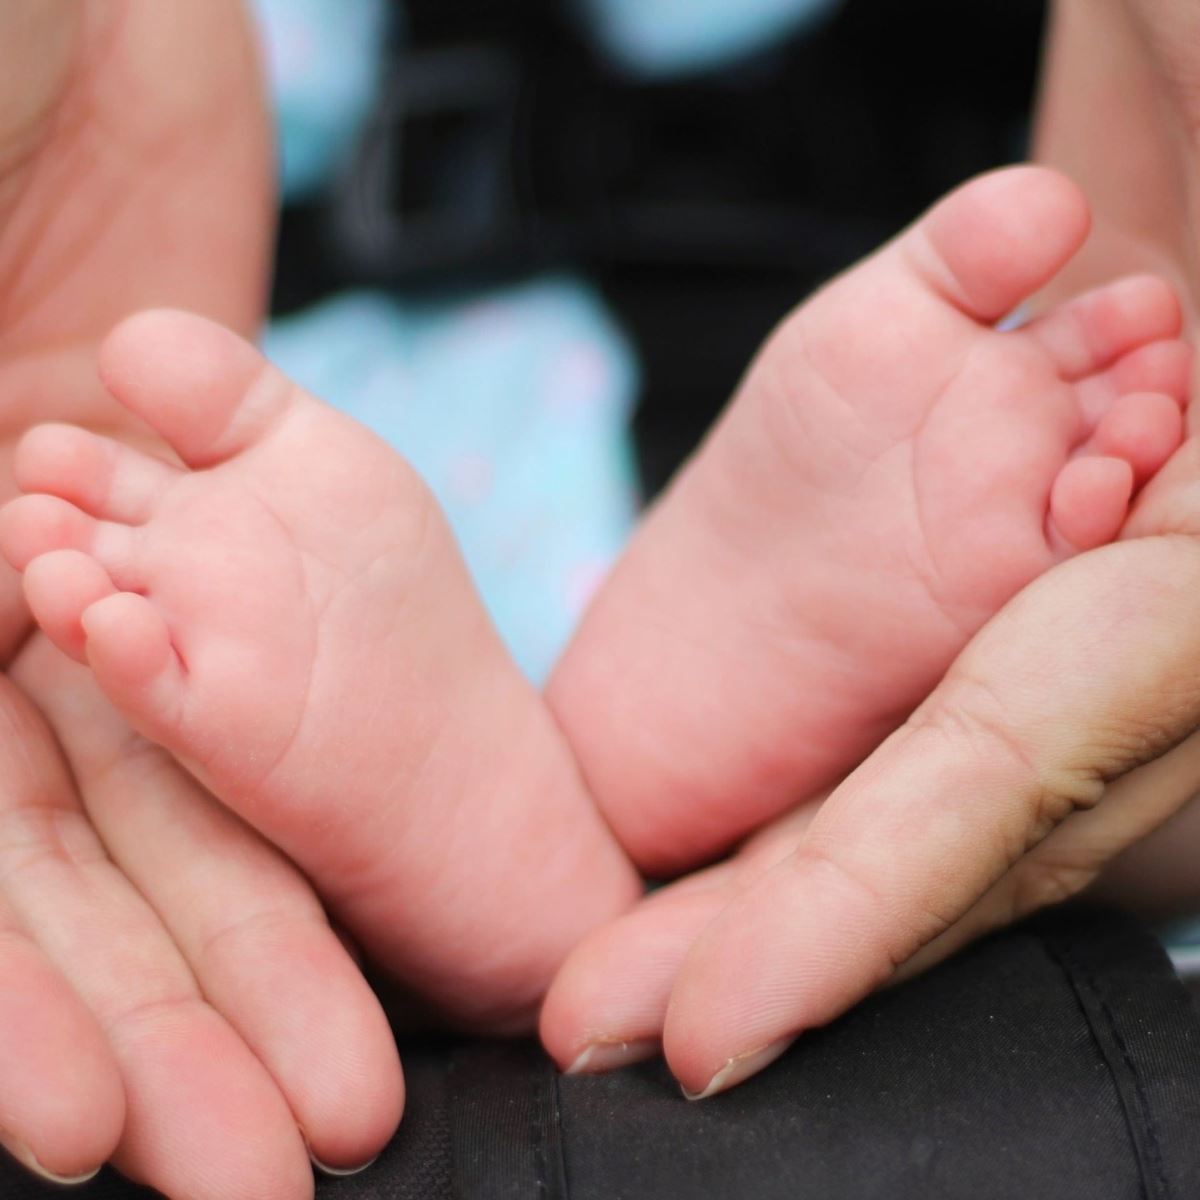 Adult hands cradling baby's feet